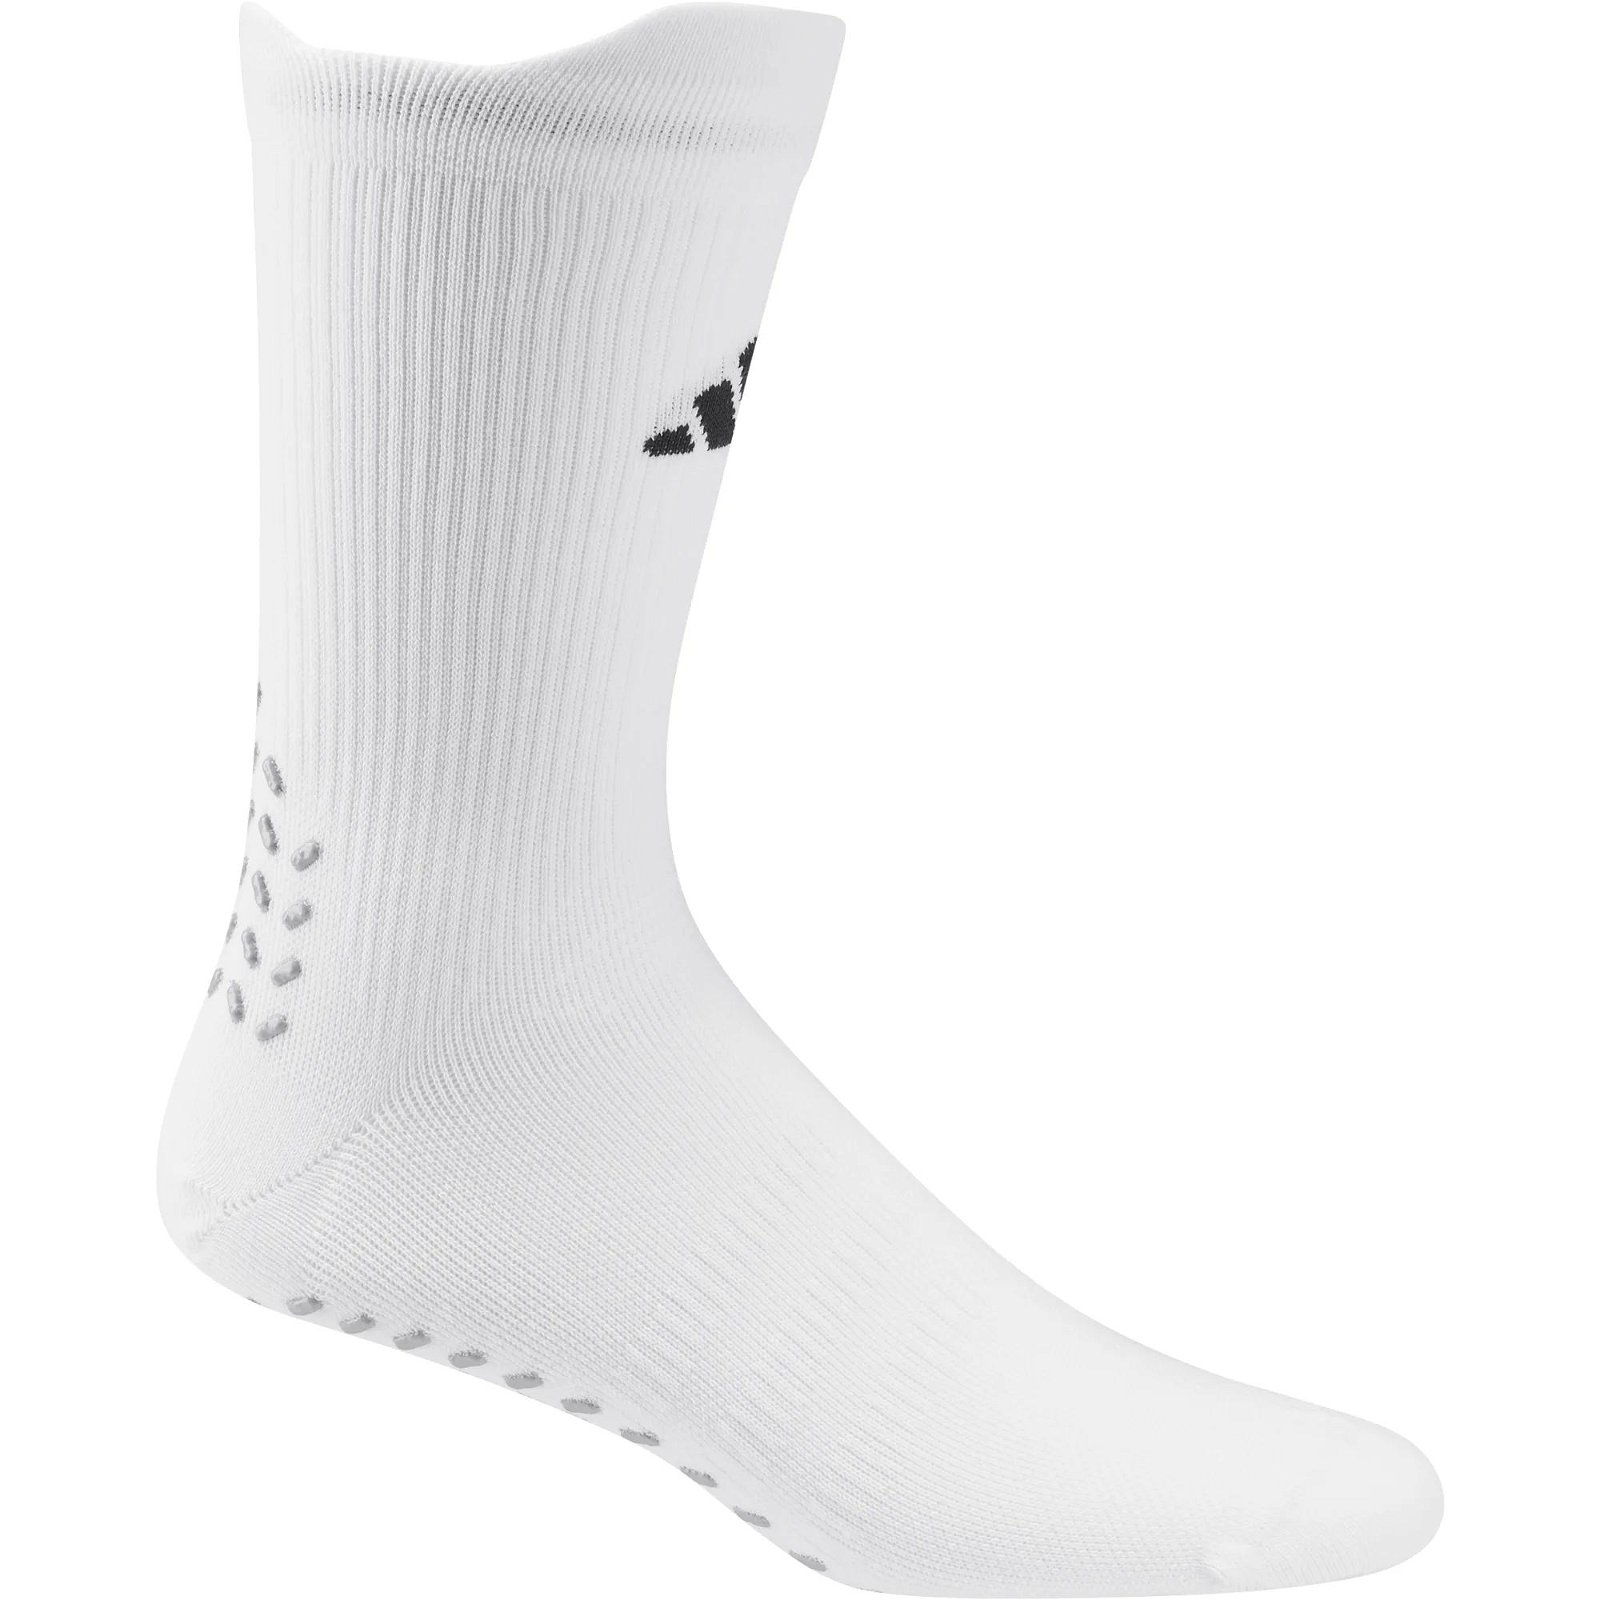 Socks Football Grip Lightweight Socks hn8837 | FLEXDOG